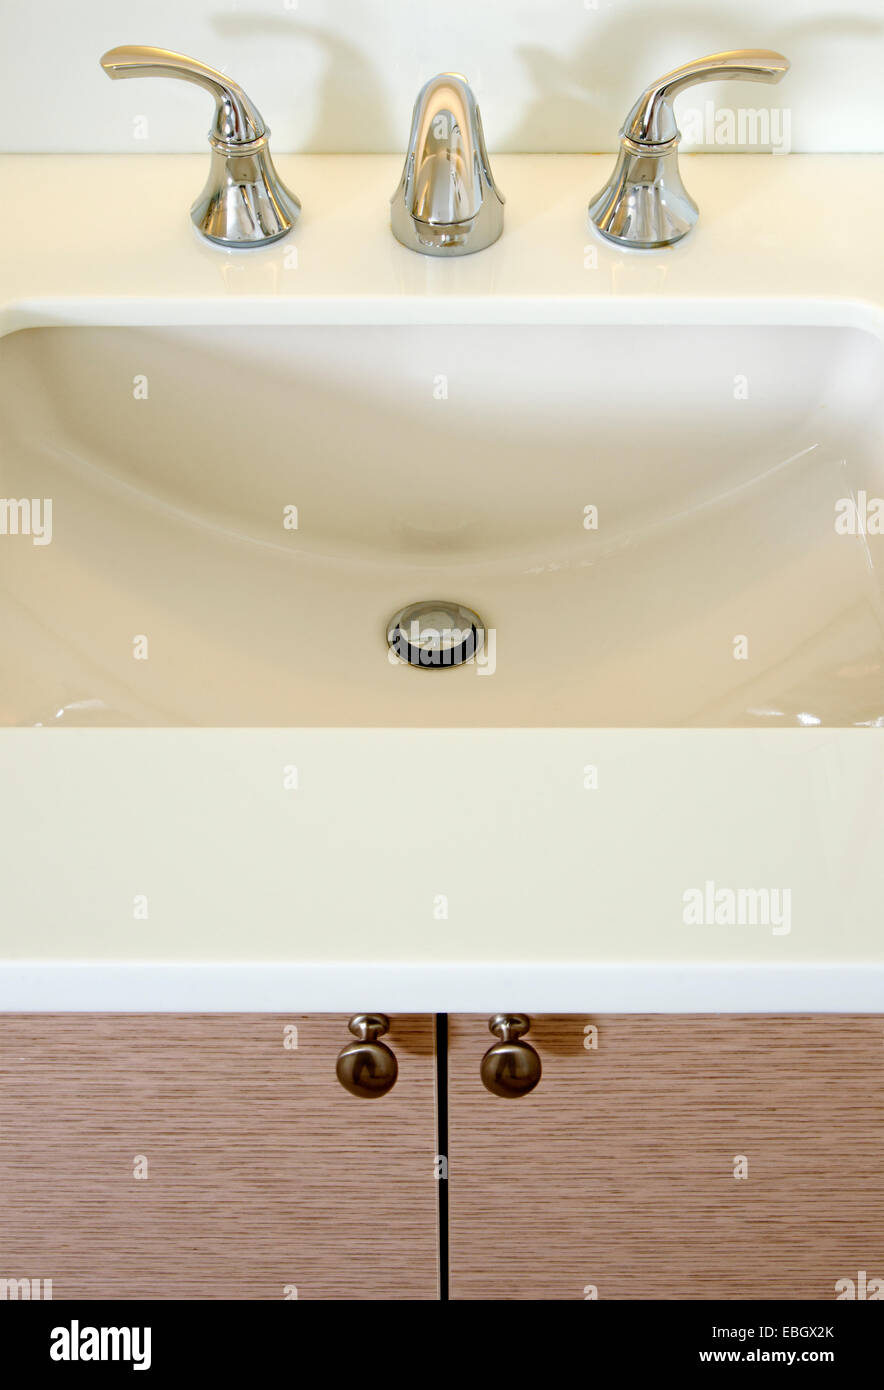 Salle de bain évier et comptoir : Gros plan d'une salle de bains lavabo, robinet en chrome et blanc compteur. Banque D'Images